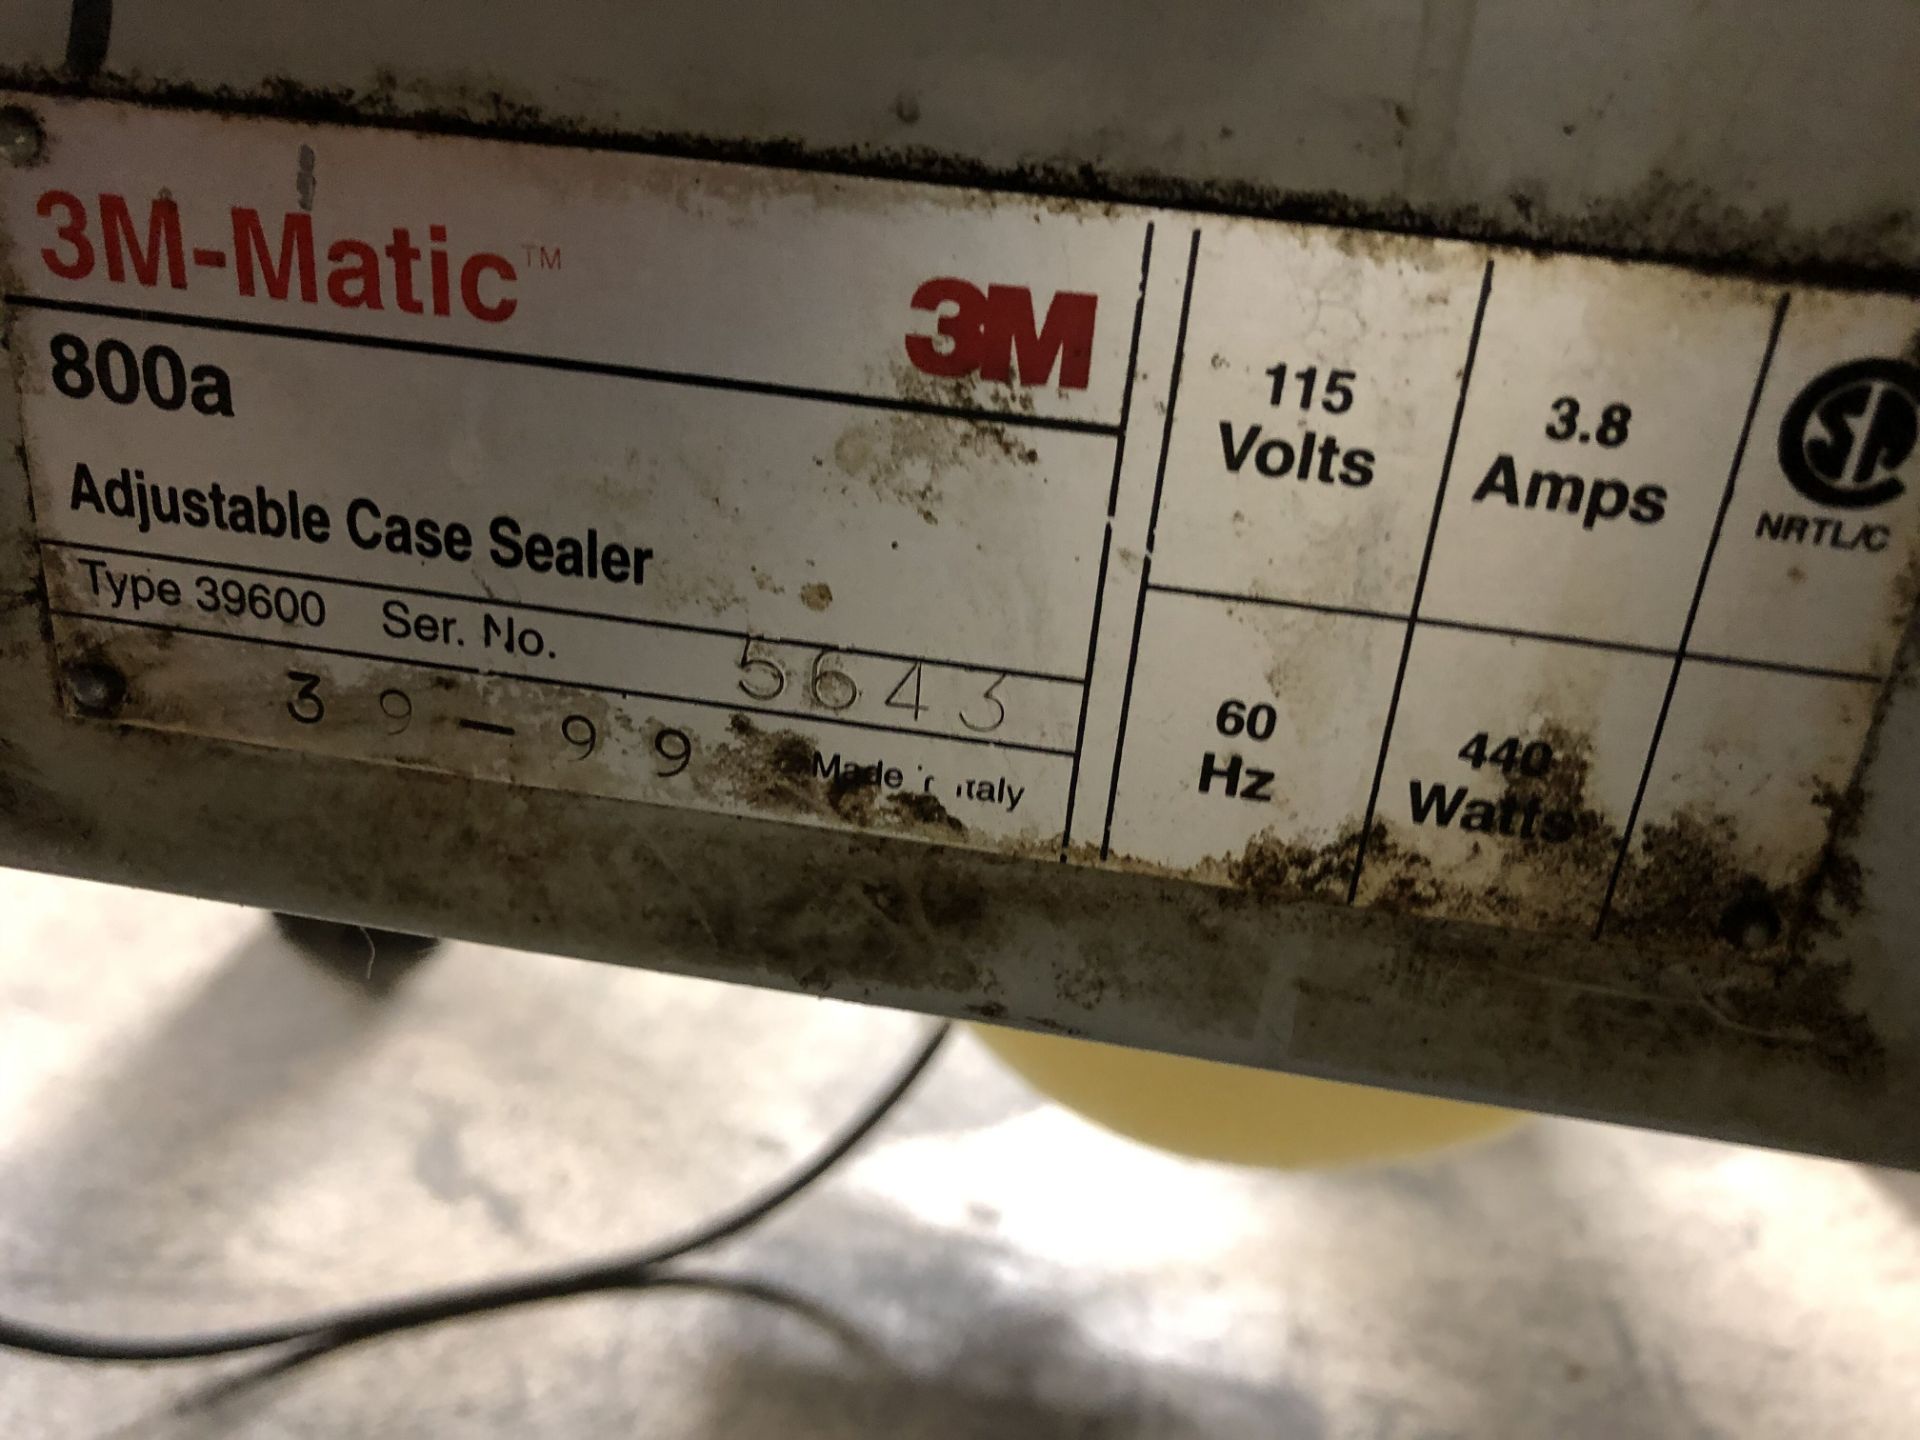 3M-Matic 800a Adjustable Case Sealer, Model #39600, S/N #5643, 115 Volts - Image 4 of 7